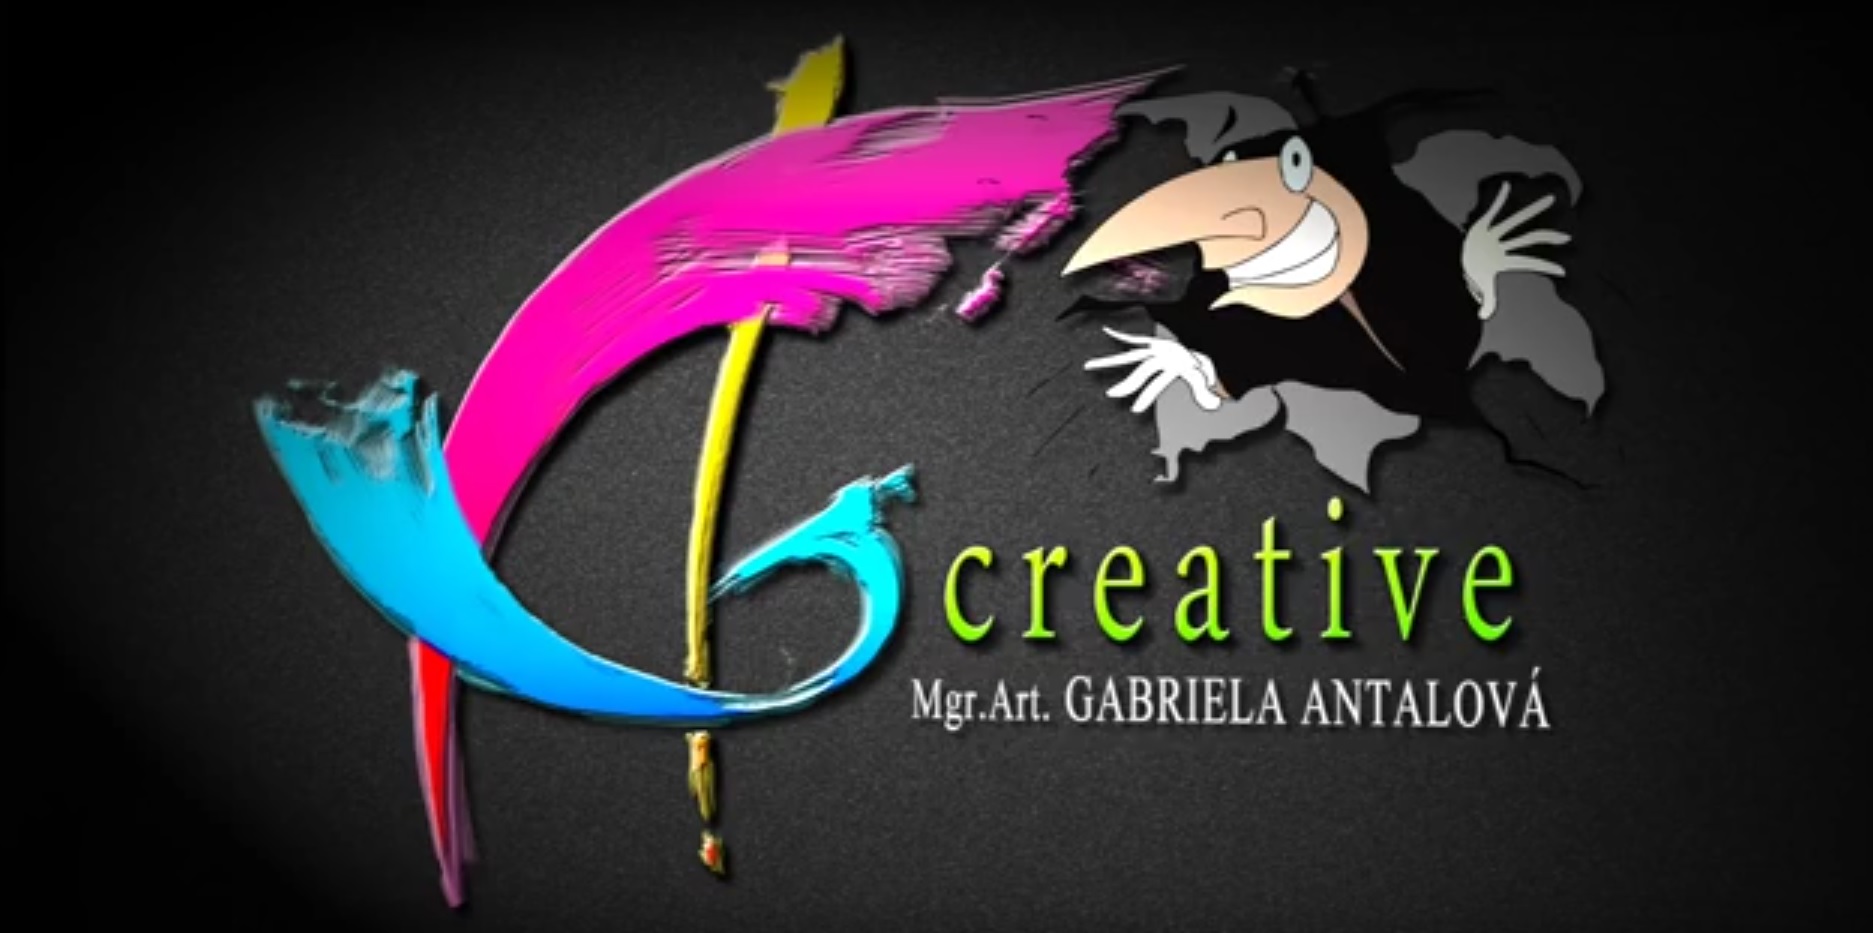 AG creative